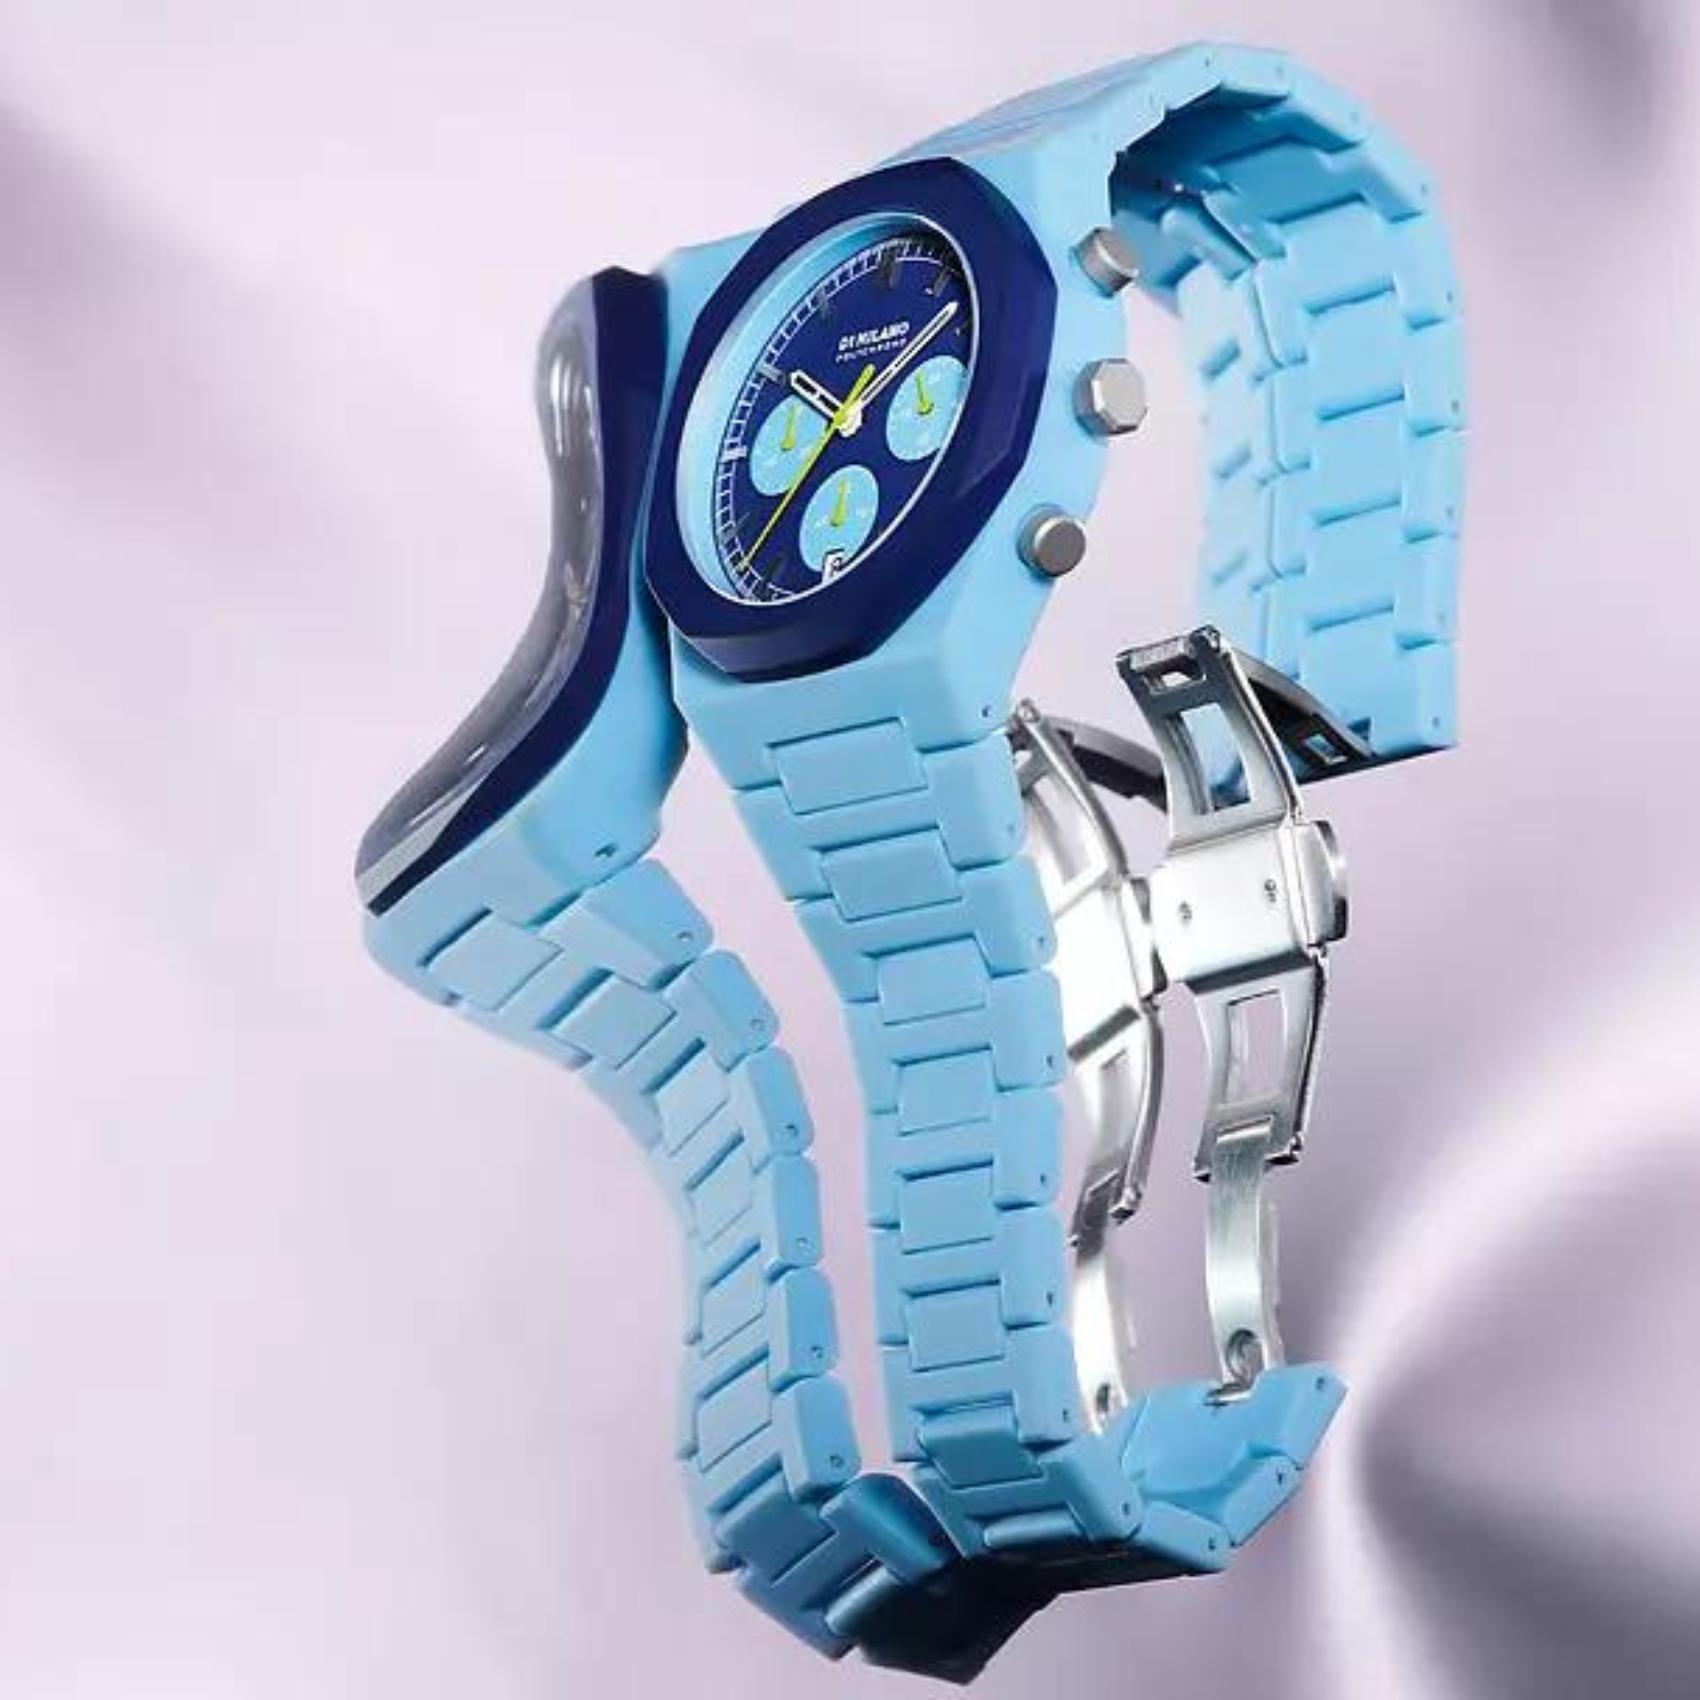 Ρολόι D1 Milano Blue Blast D1-PHBJ03 χρονογράφος με μπλε ατσάλινο μπρασελέ και μπλε καντράν 40.5mm με οκτάγωνο σχήμα.